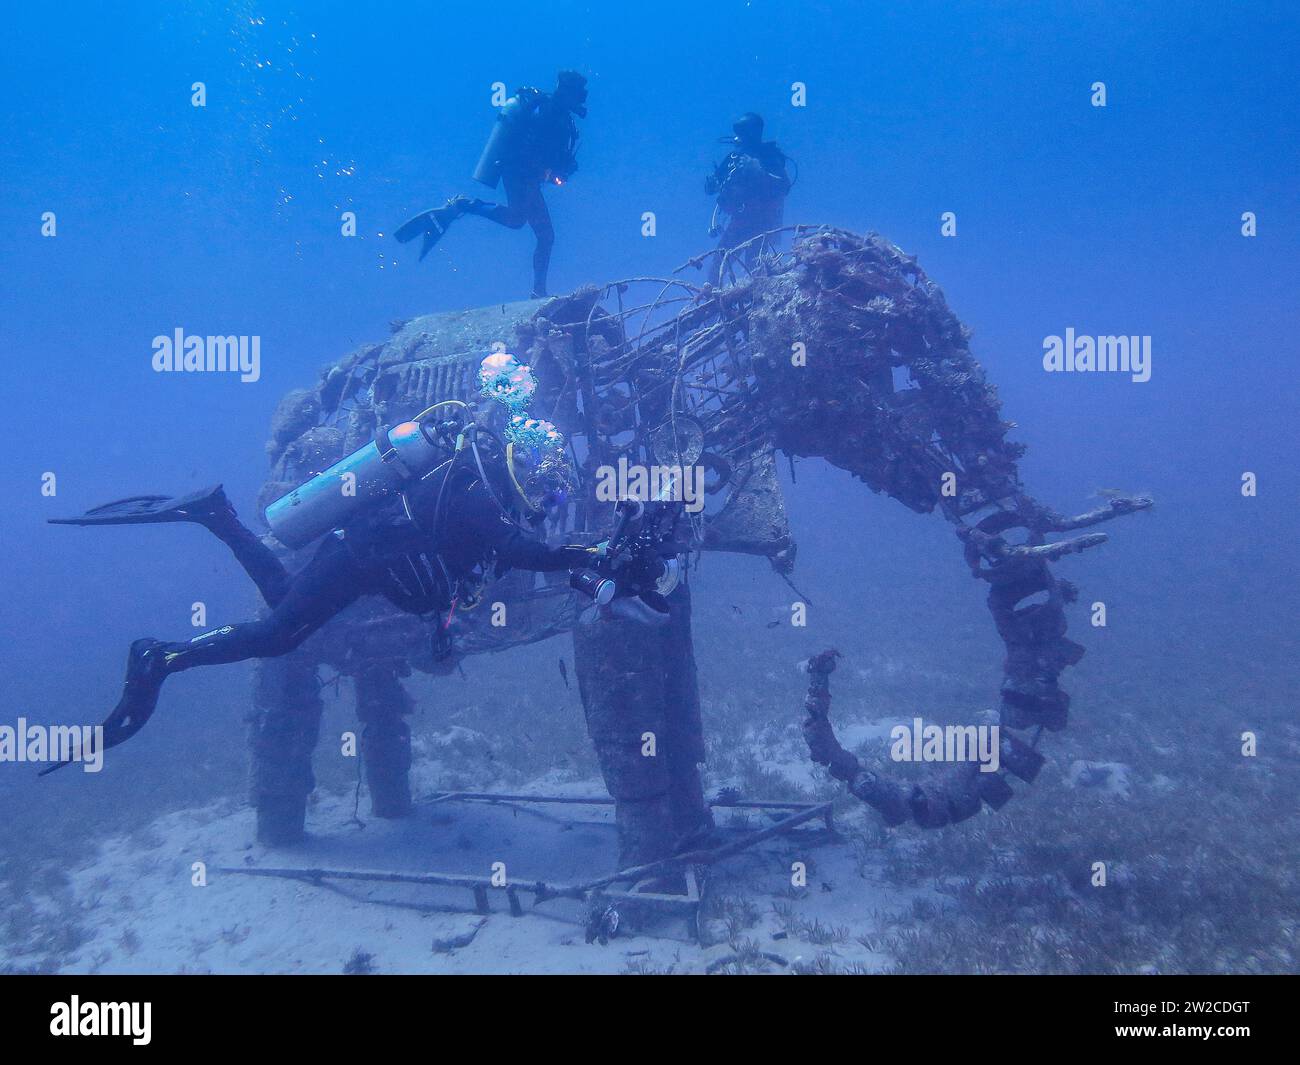 Taucher an Unterwasserskulptur Elefant, Unterwasser-Foto, Tauchplatz Lighthouse, Dahab, Golf von Akaba, Rotes Meer, Sinai, Ägypten Stock Photo